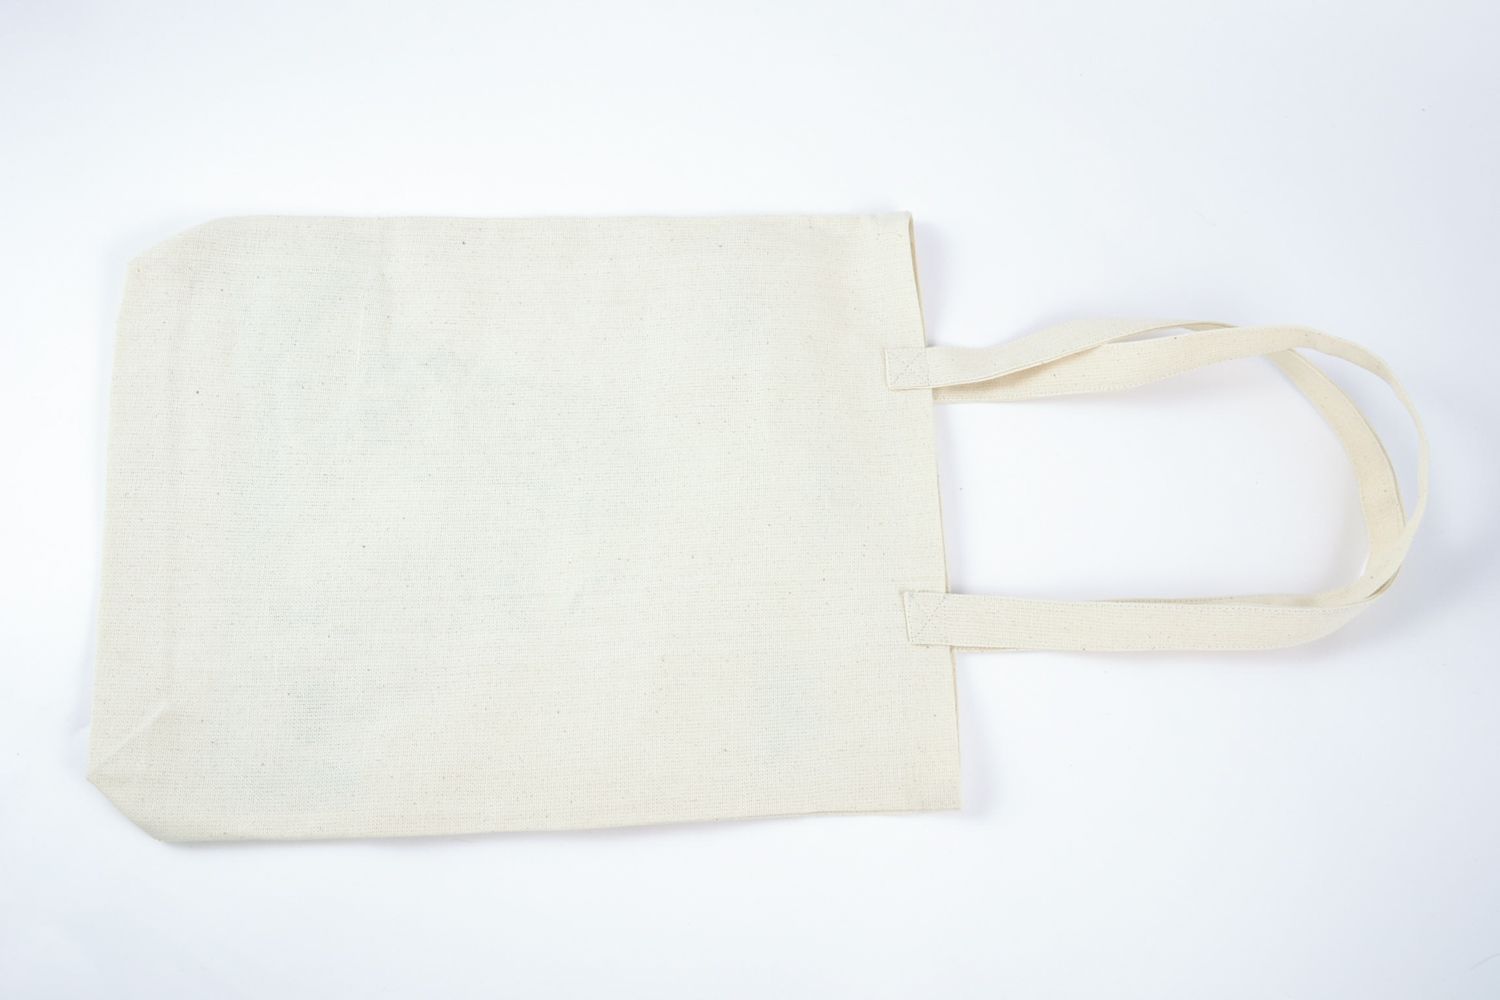 Женская сумка из ткани конопляной расписанная акриловыми красками фото 3